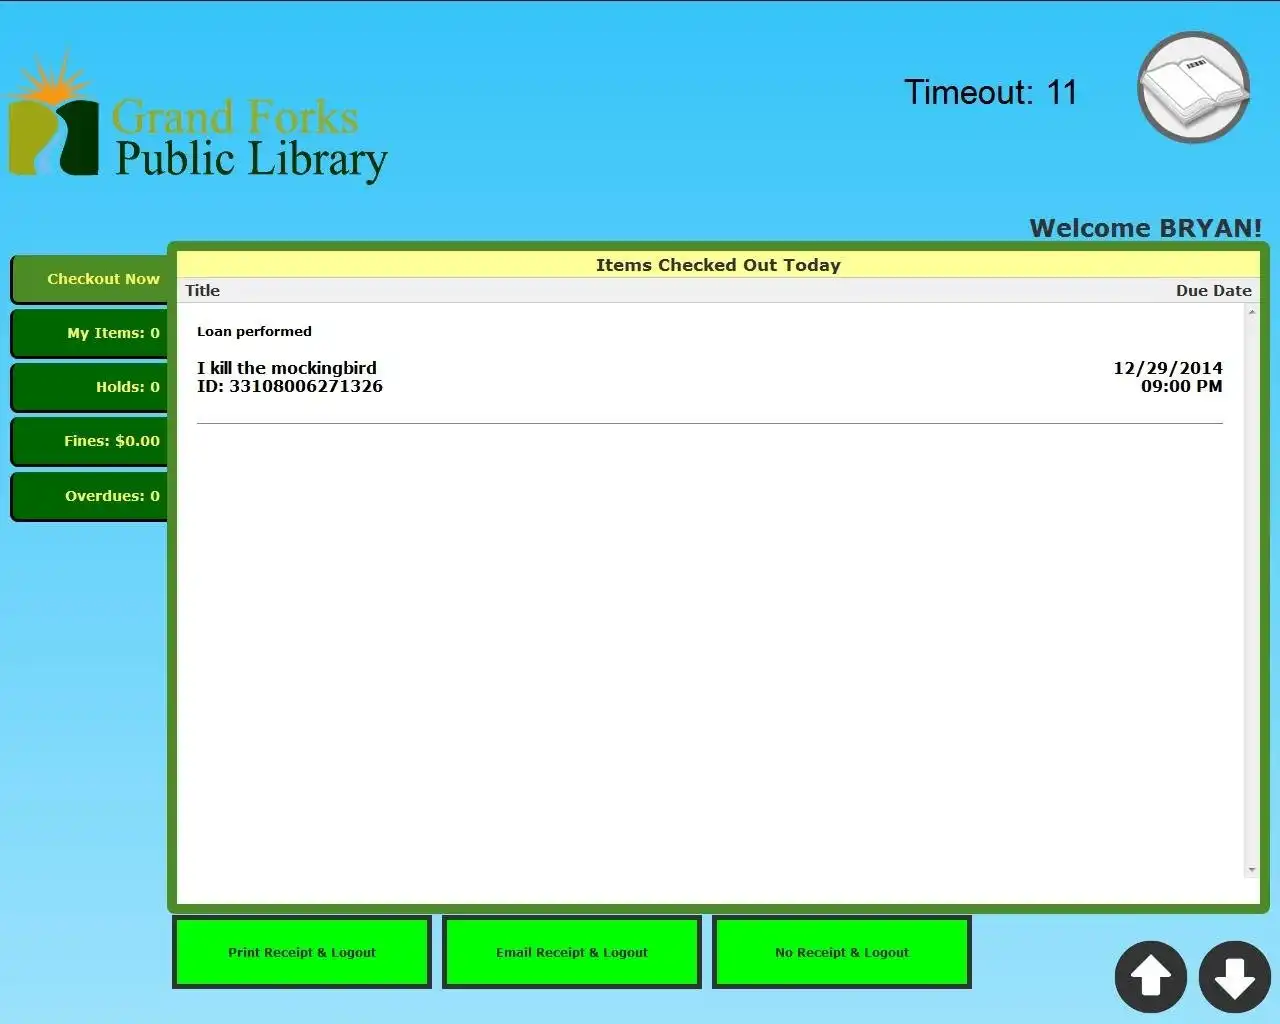 Descărcați instrumentul web sau aplicația web LibrarySelfCheck